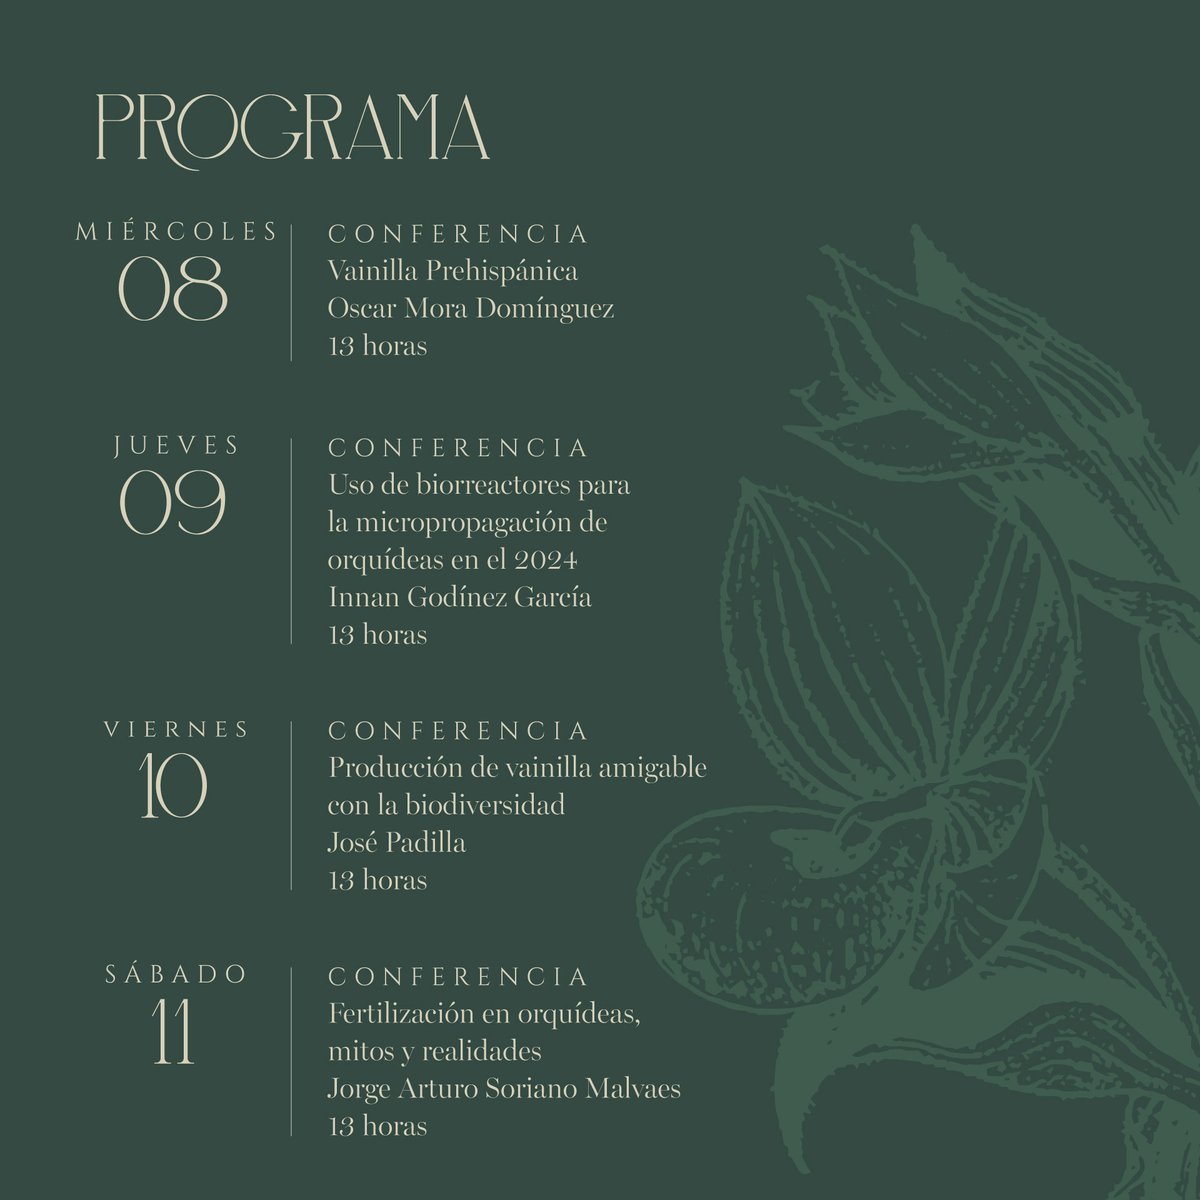 El @museofranzmayer en colaboración con la Asociación Mexicana de Orquideología presentan #Orquídeas. Vainilla prehispánica, compuesta por alrededor de 350 orquídeas en floración, insumos de cultivo y productos asociados estarán en exhibición, del 3 al 12 de mayo #museo #cdmx